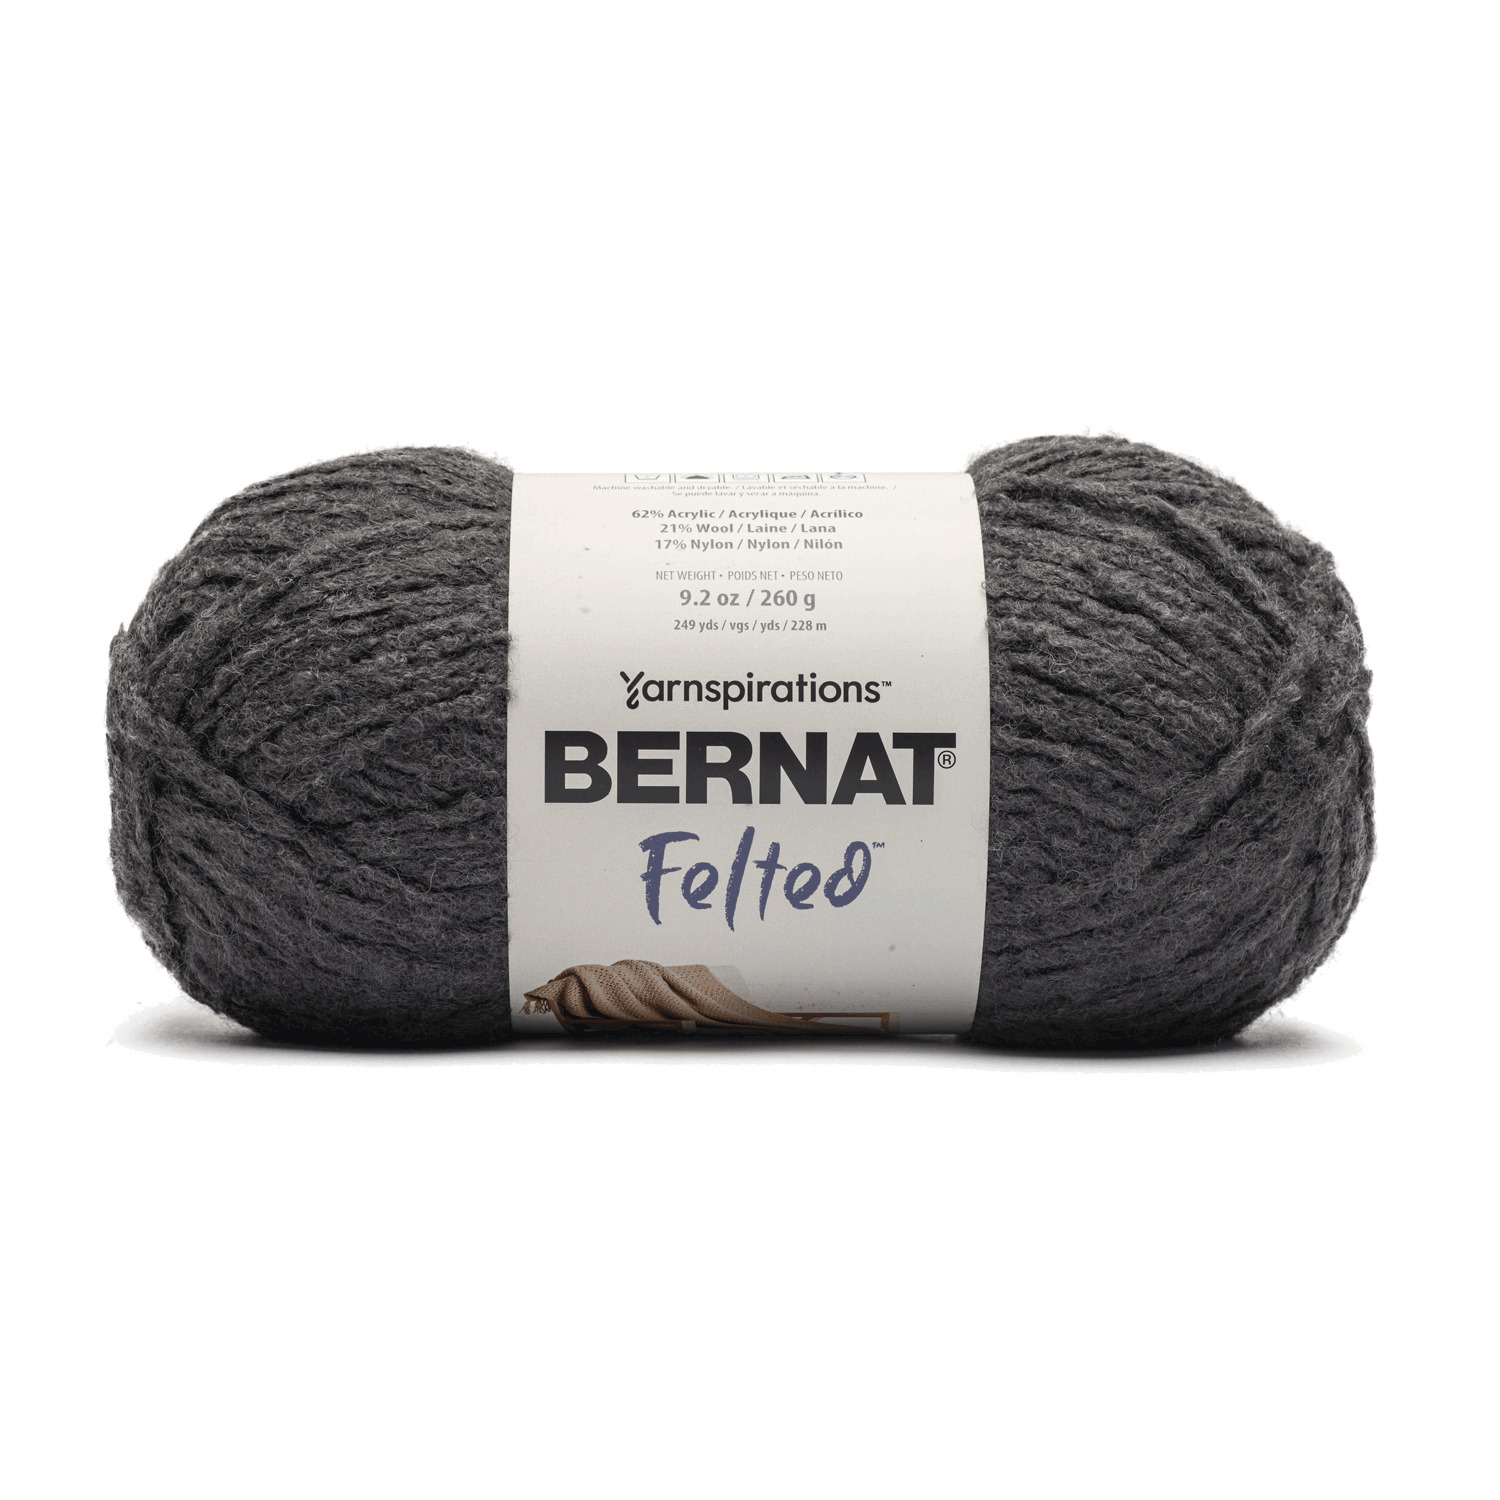 Bernat Felted - Yarn, Coal